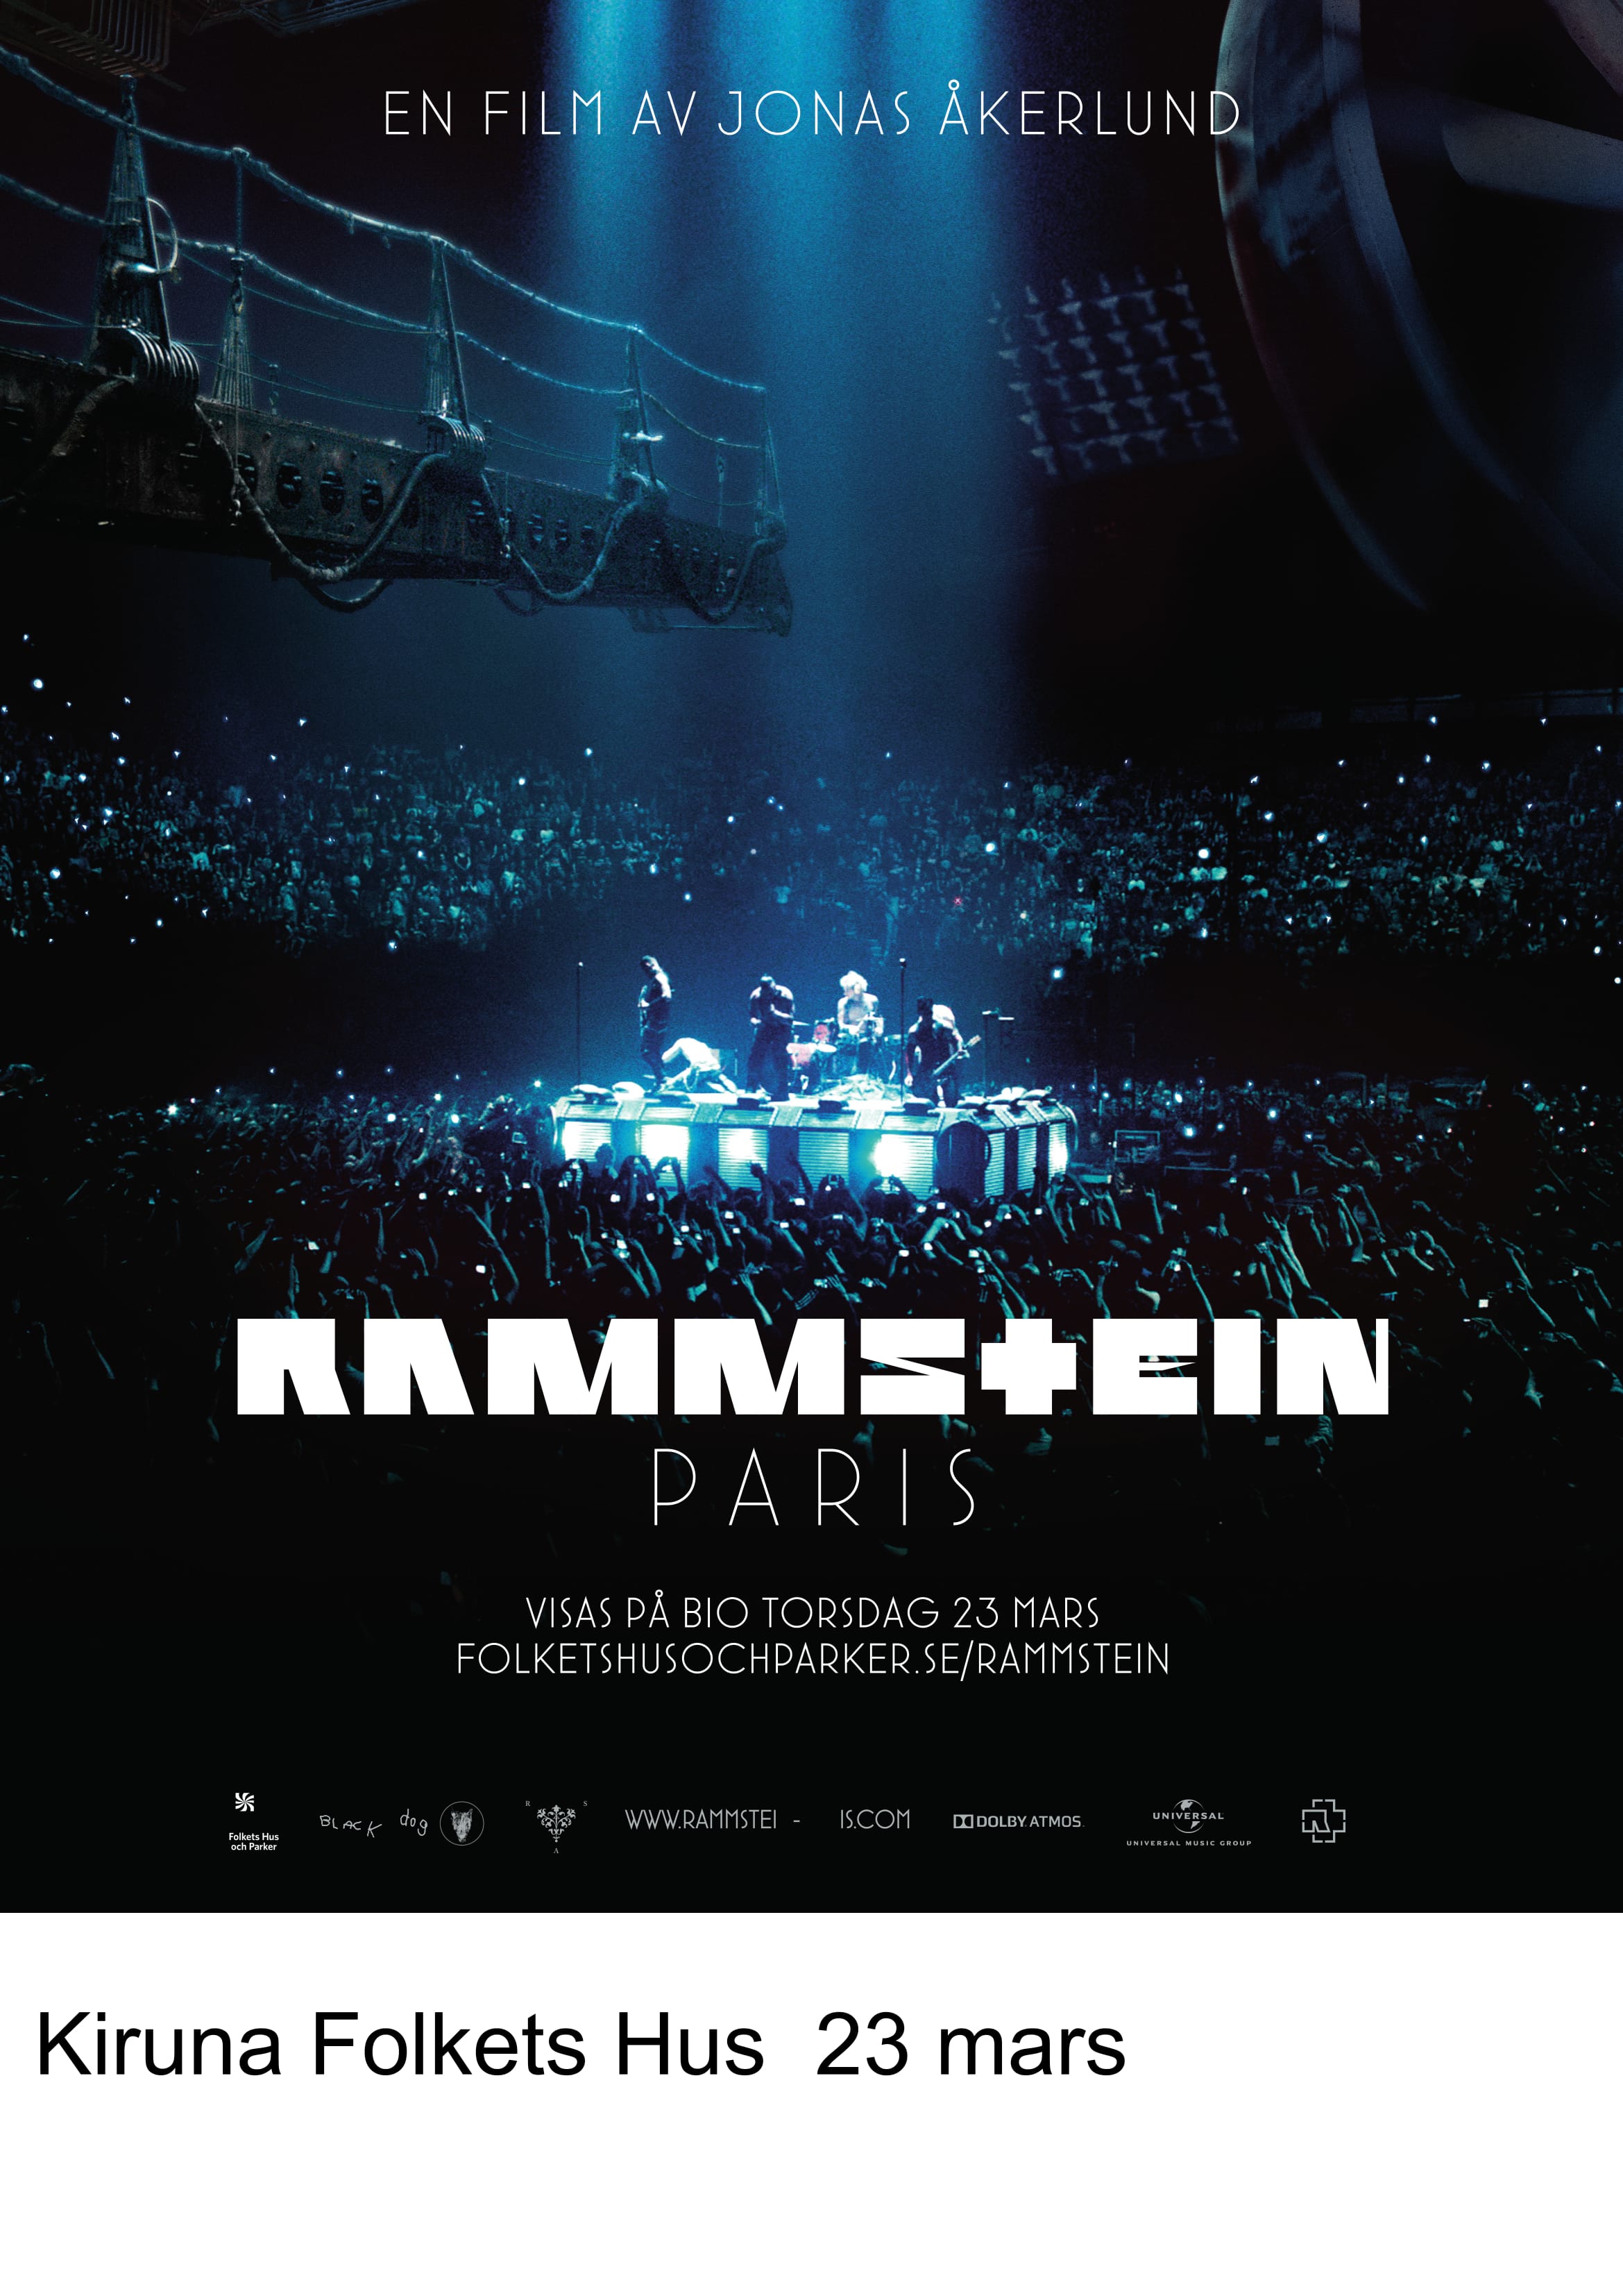 Affisch fr Rammstein p Musikfrestllning i Kiruna p Kiruna Folkets Hus